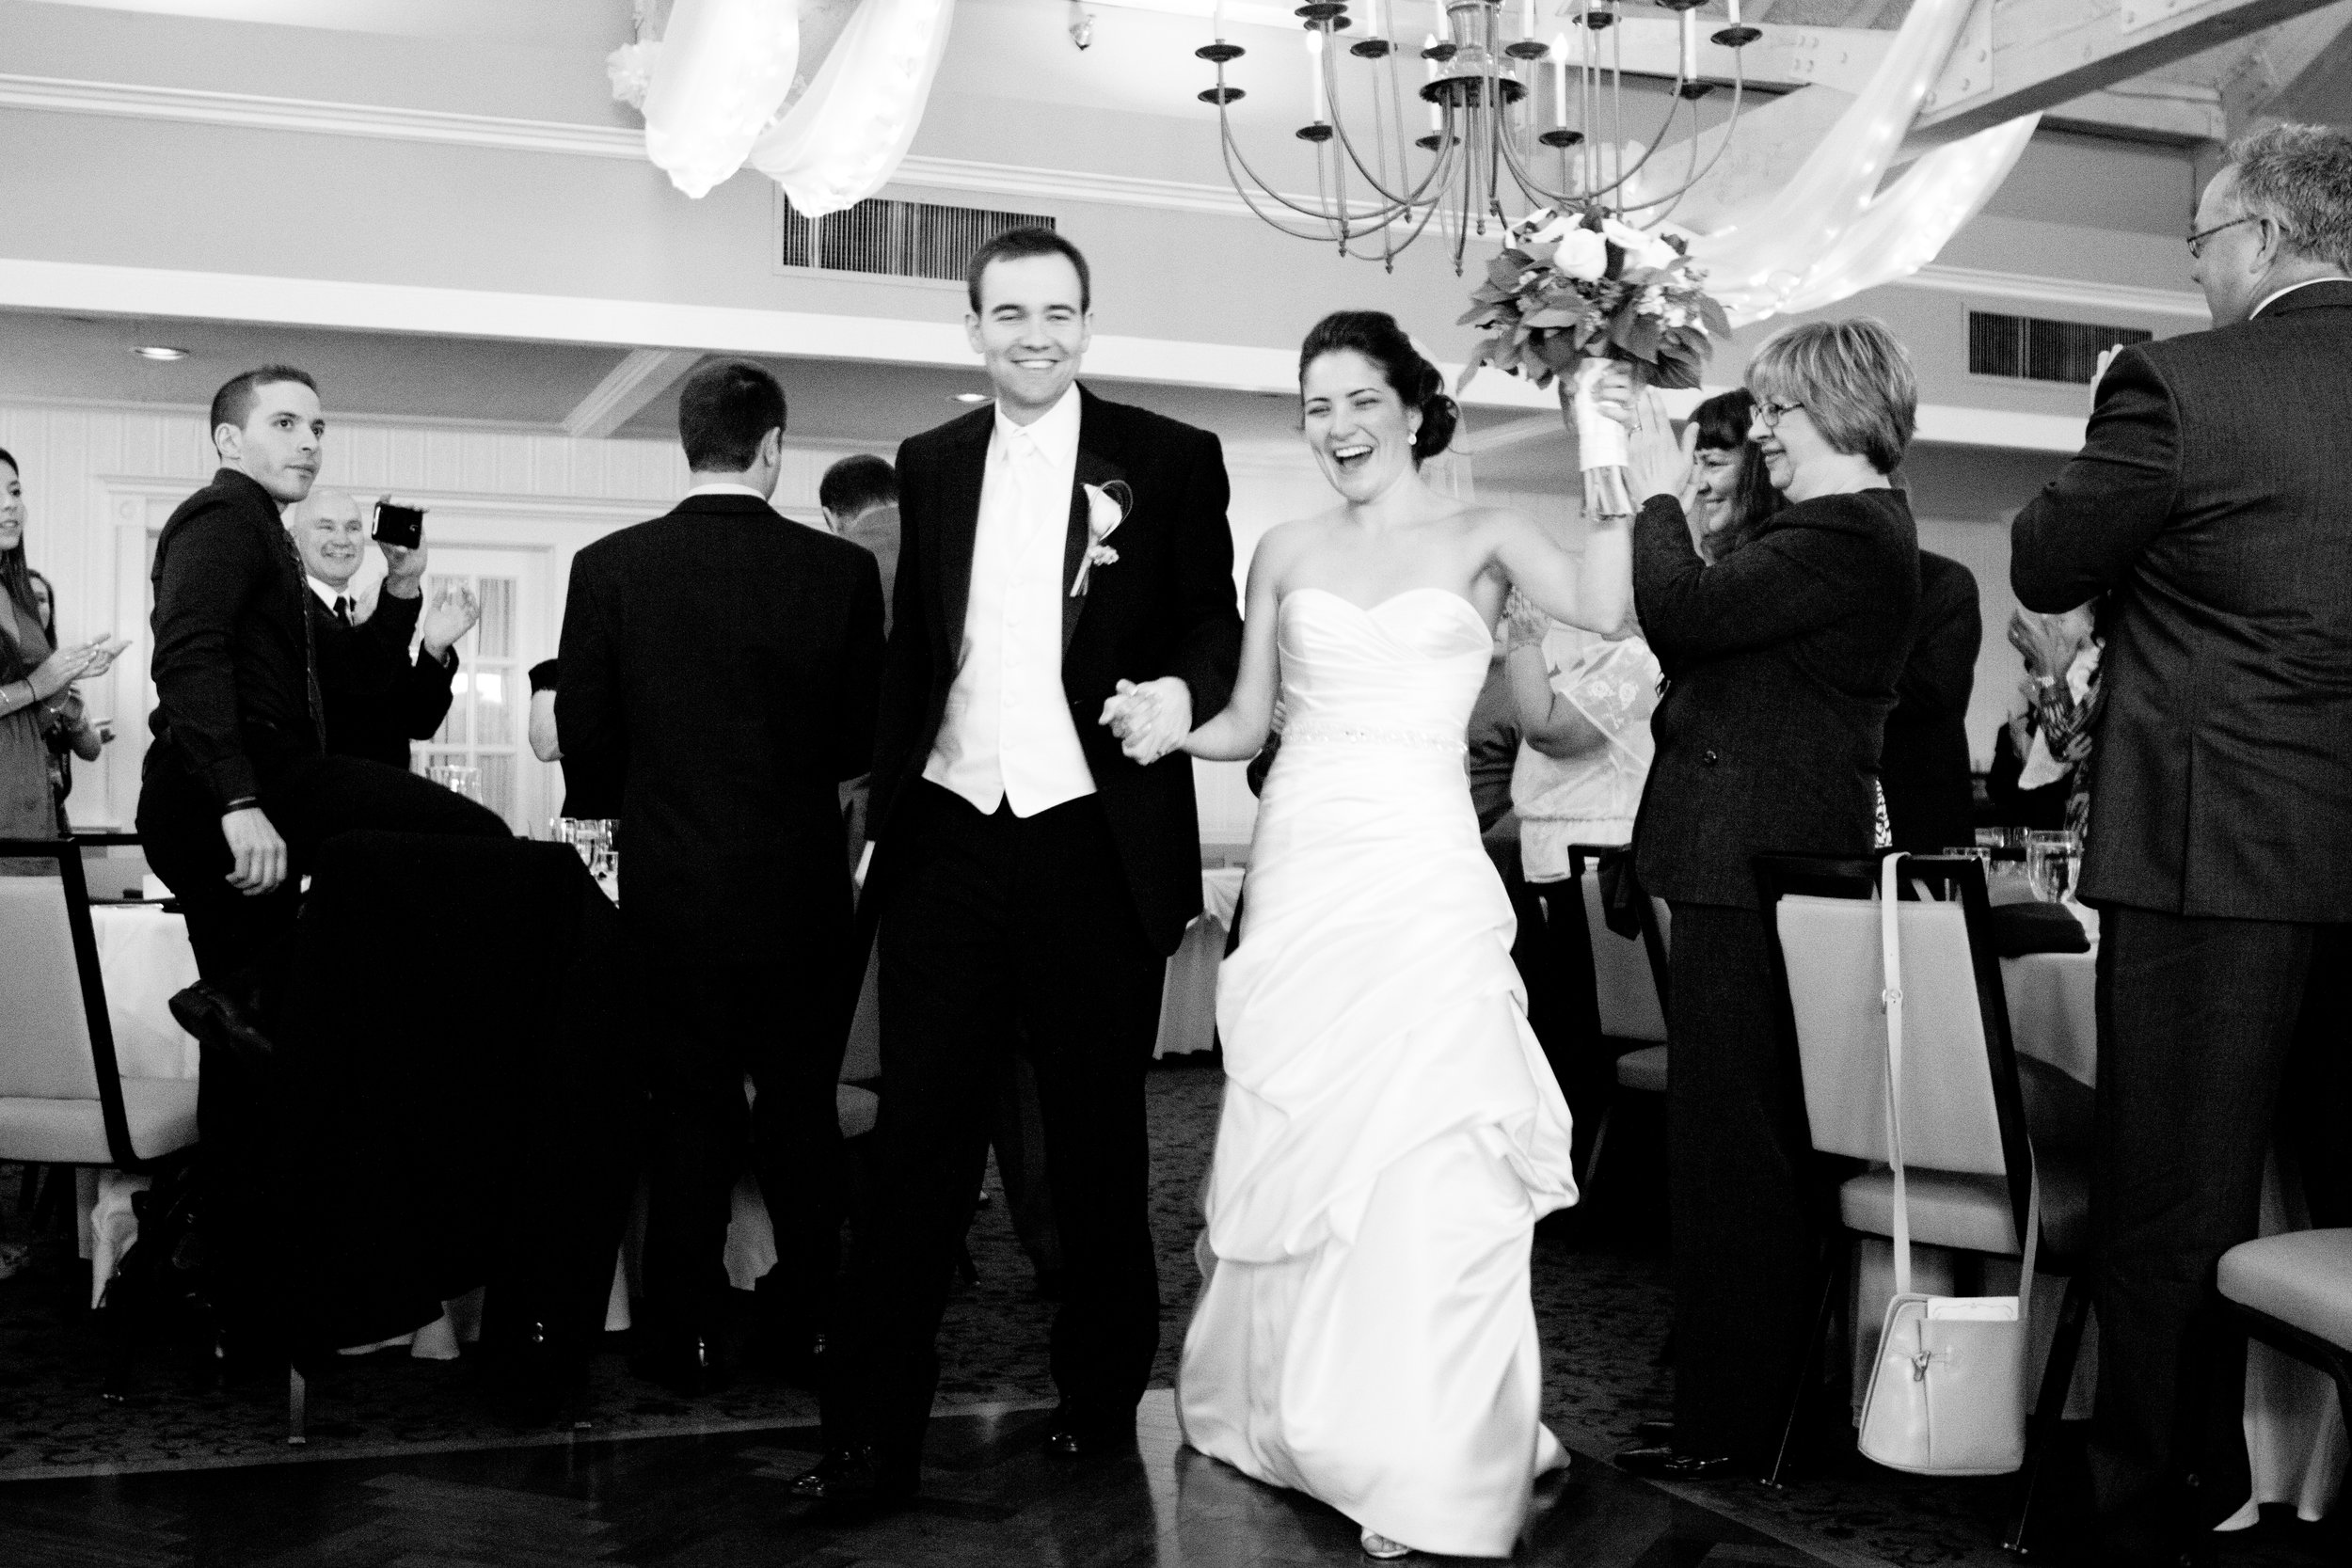 Michelle and Tom Inn at Scituate Harbor Barker Tavern Scituate Massachusetts Wedding Photographer Shannon Sorensen Photography